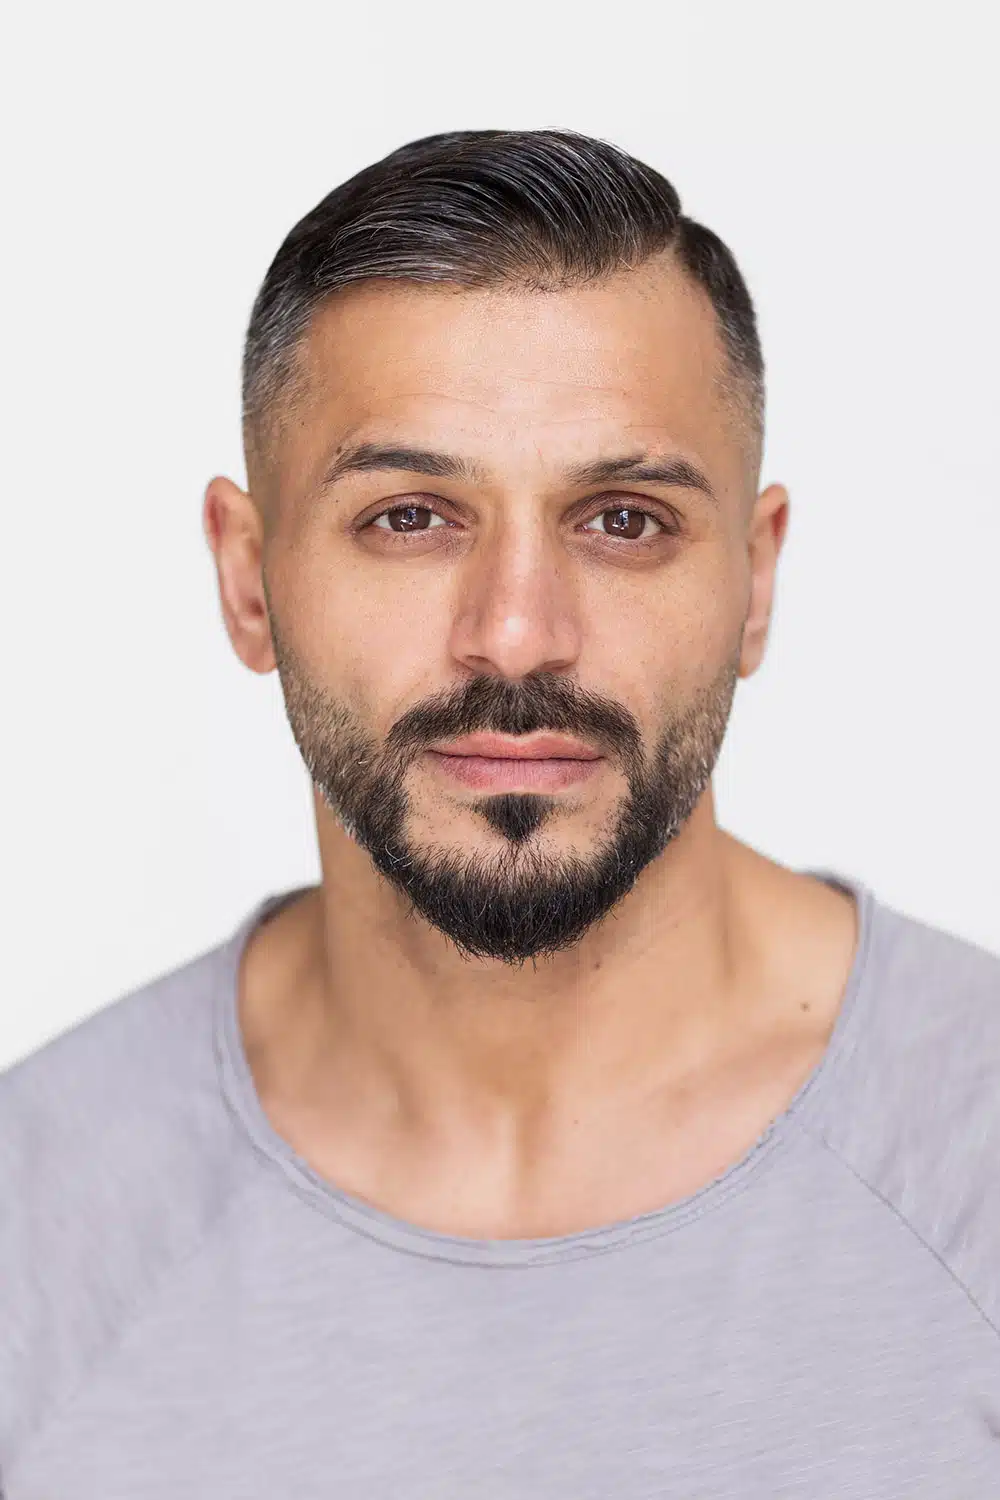 Tamer Arslan, Actors Agency Osman, Schauspielagentur